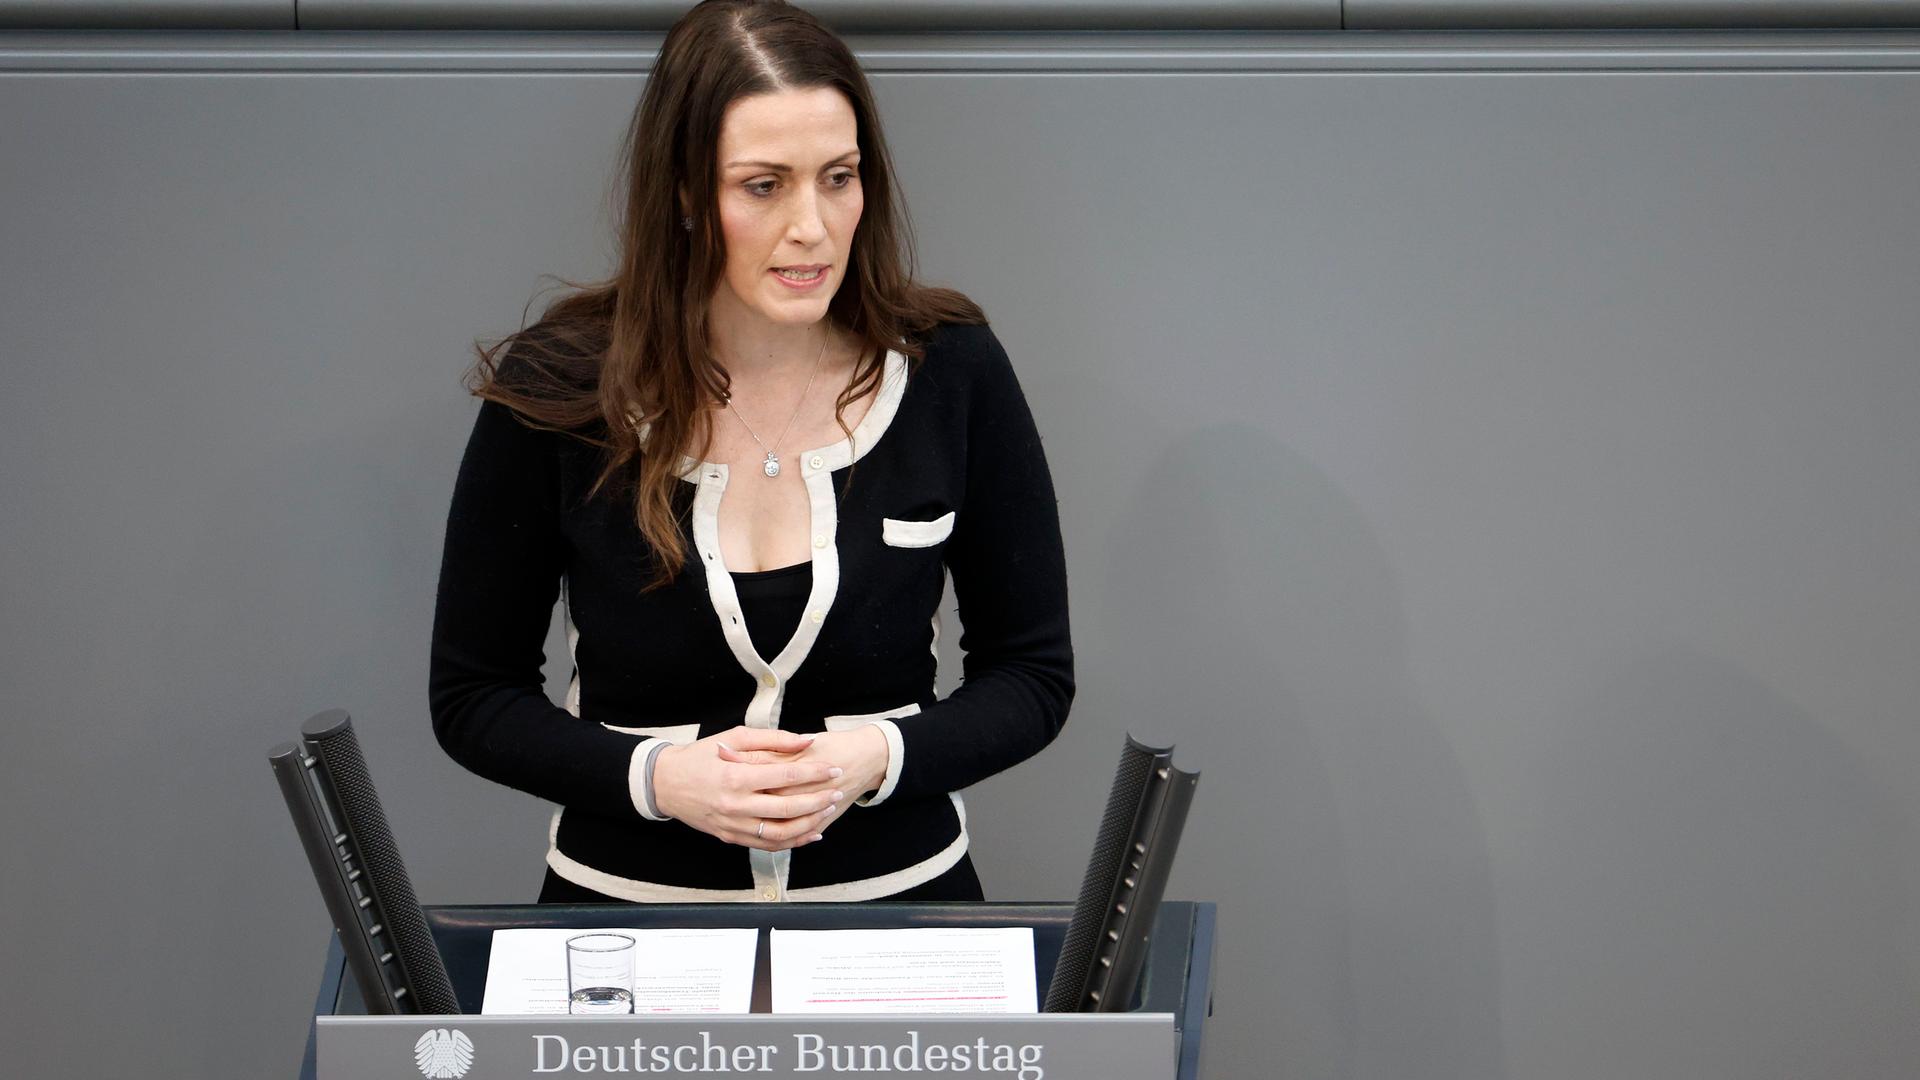 Nicole Bauer in spricht in der Sitzung des Deutschen Bundestages im Reichstagsgebäude. Sie steht hinter einem Rednerpult.